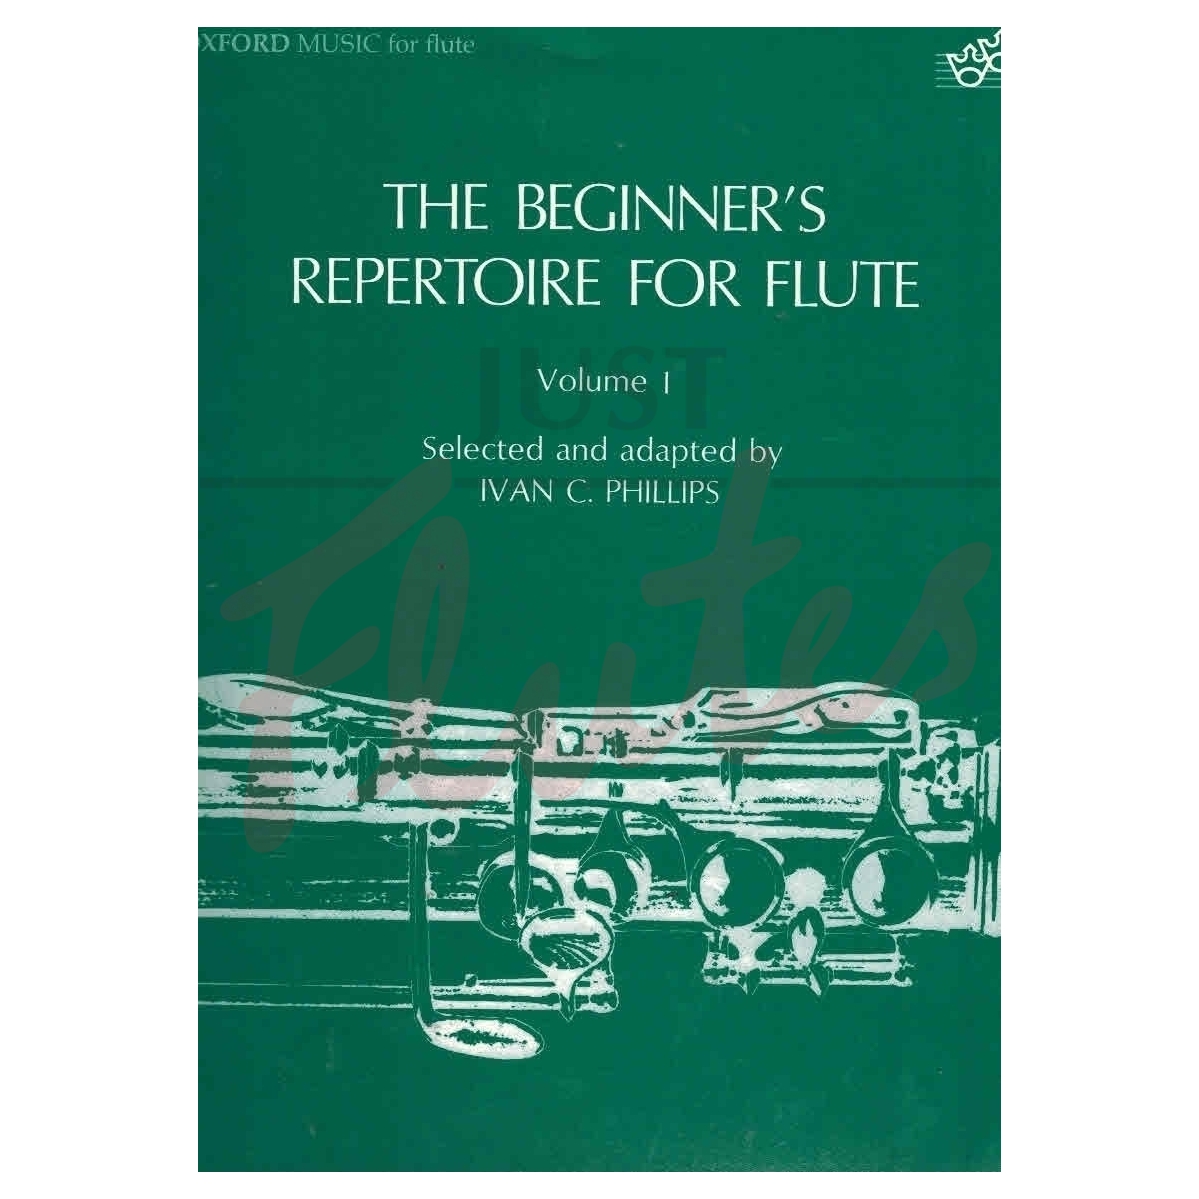 The Beginner's Repertoire for Flute, Vol 1